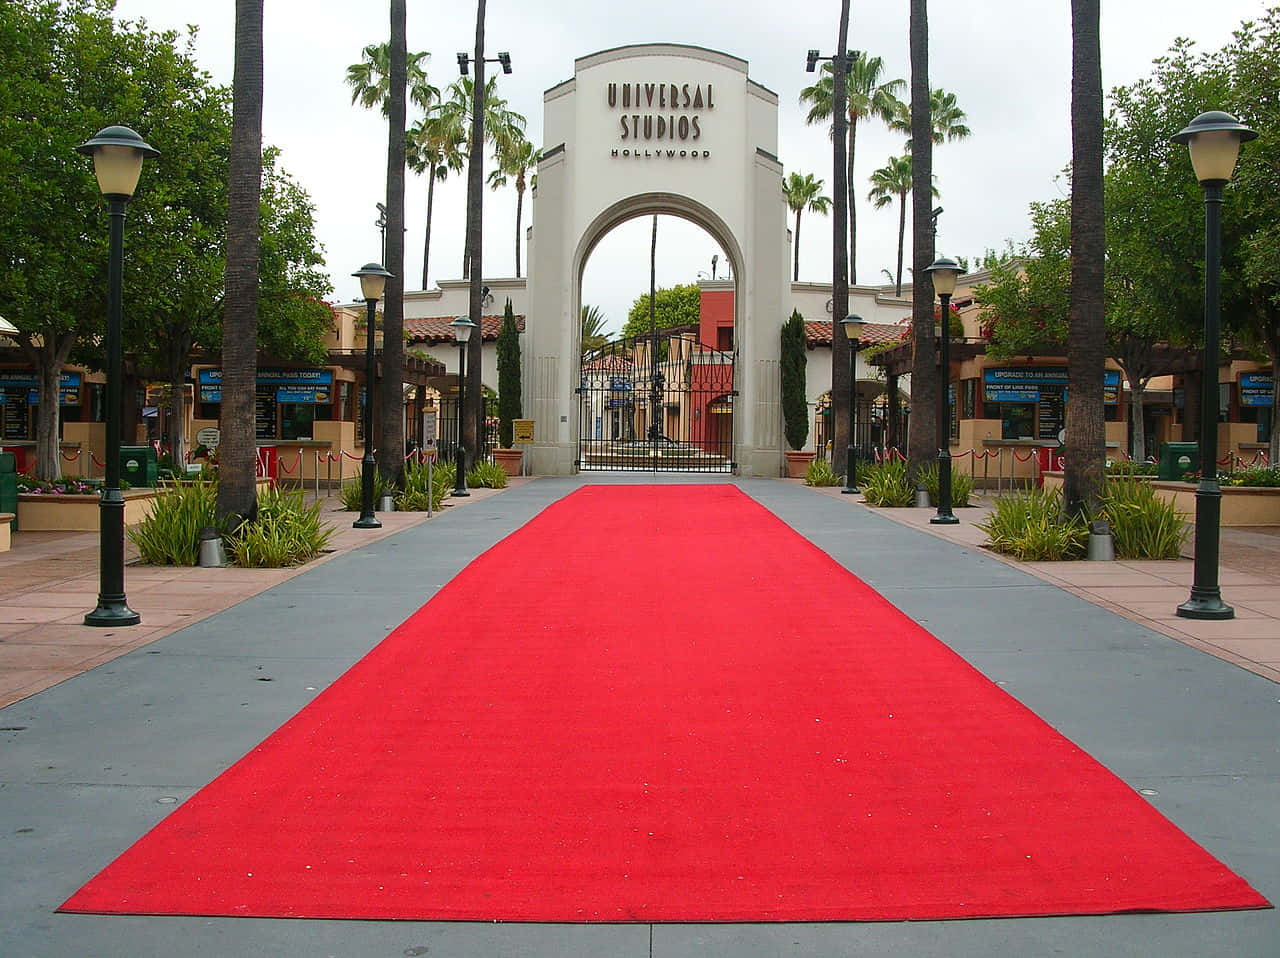 Fundode Tela Do Tapete Vermelho Da Entrada Do Universal Studios Hollywood